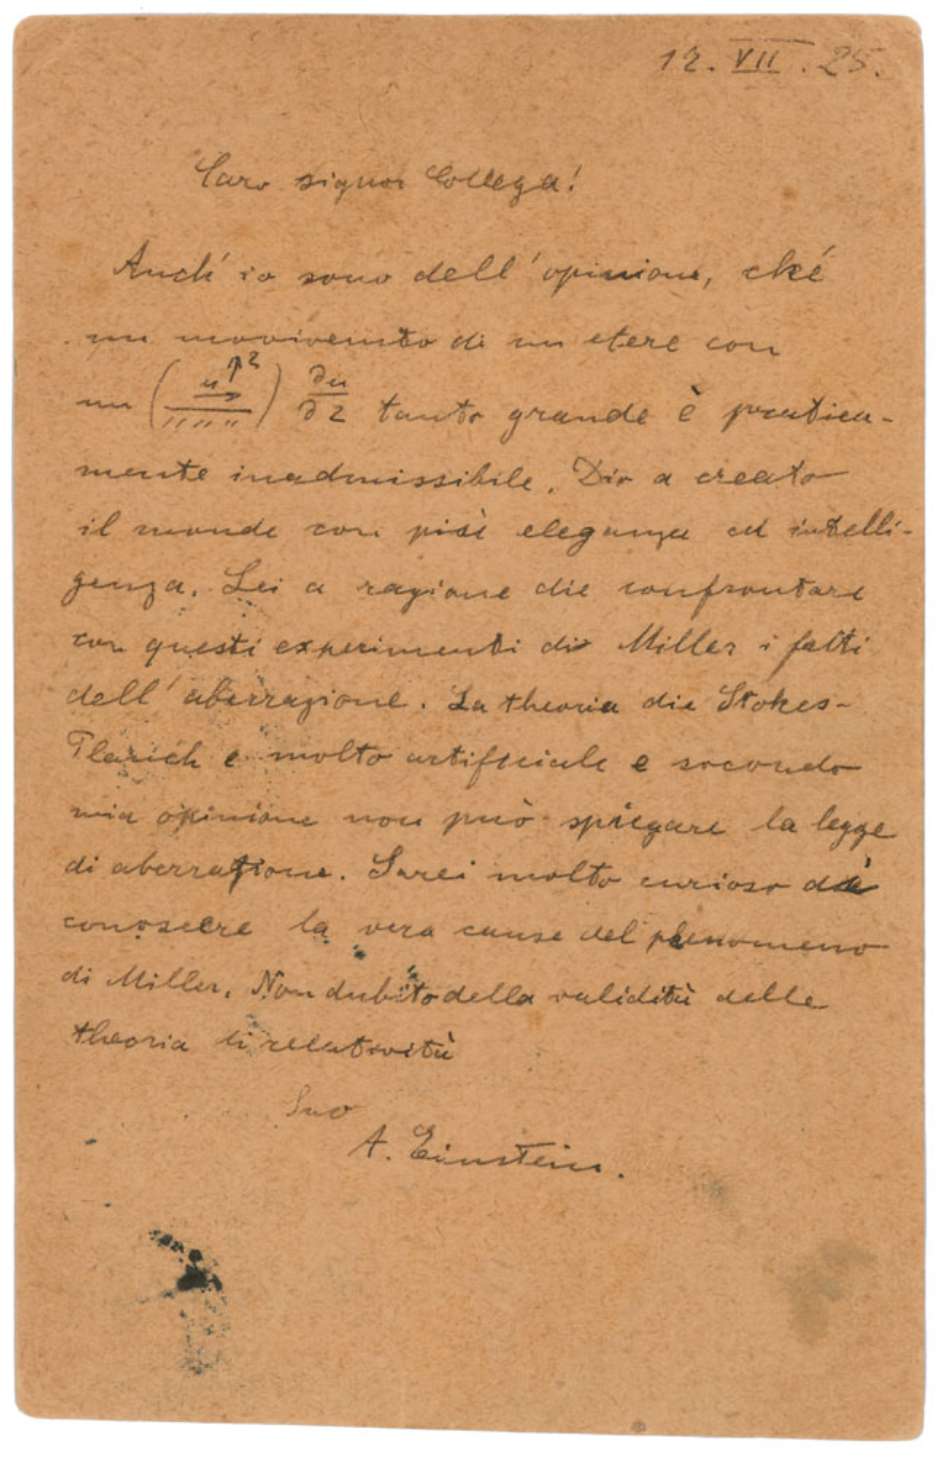 Na carta, Einstein nota que "Deus criou o mundo com muita elegância e inteligência". Foto: RR Auction / Reprodução